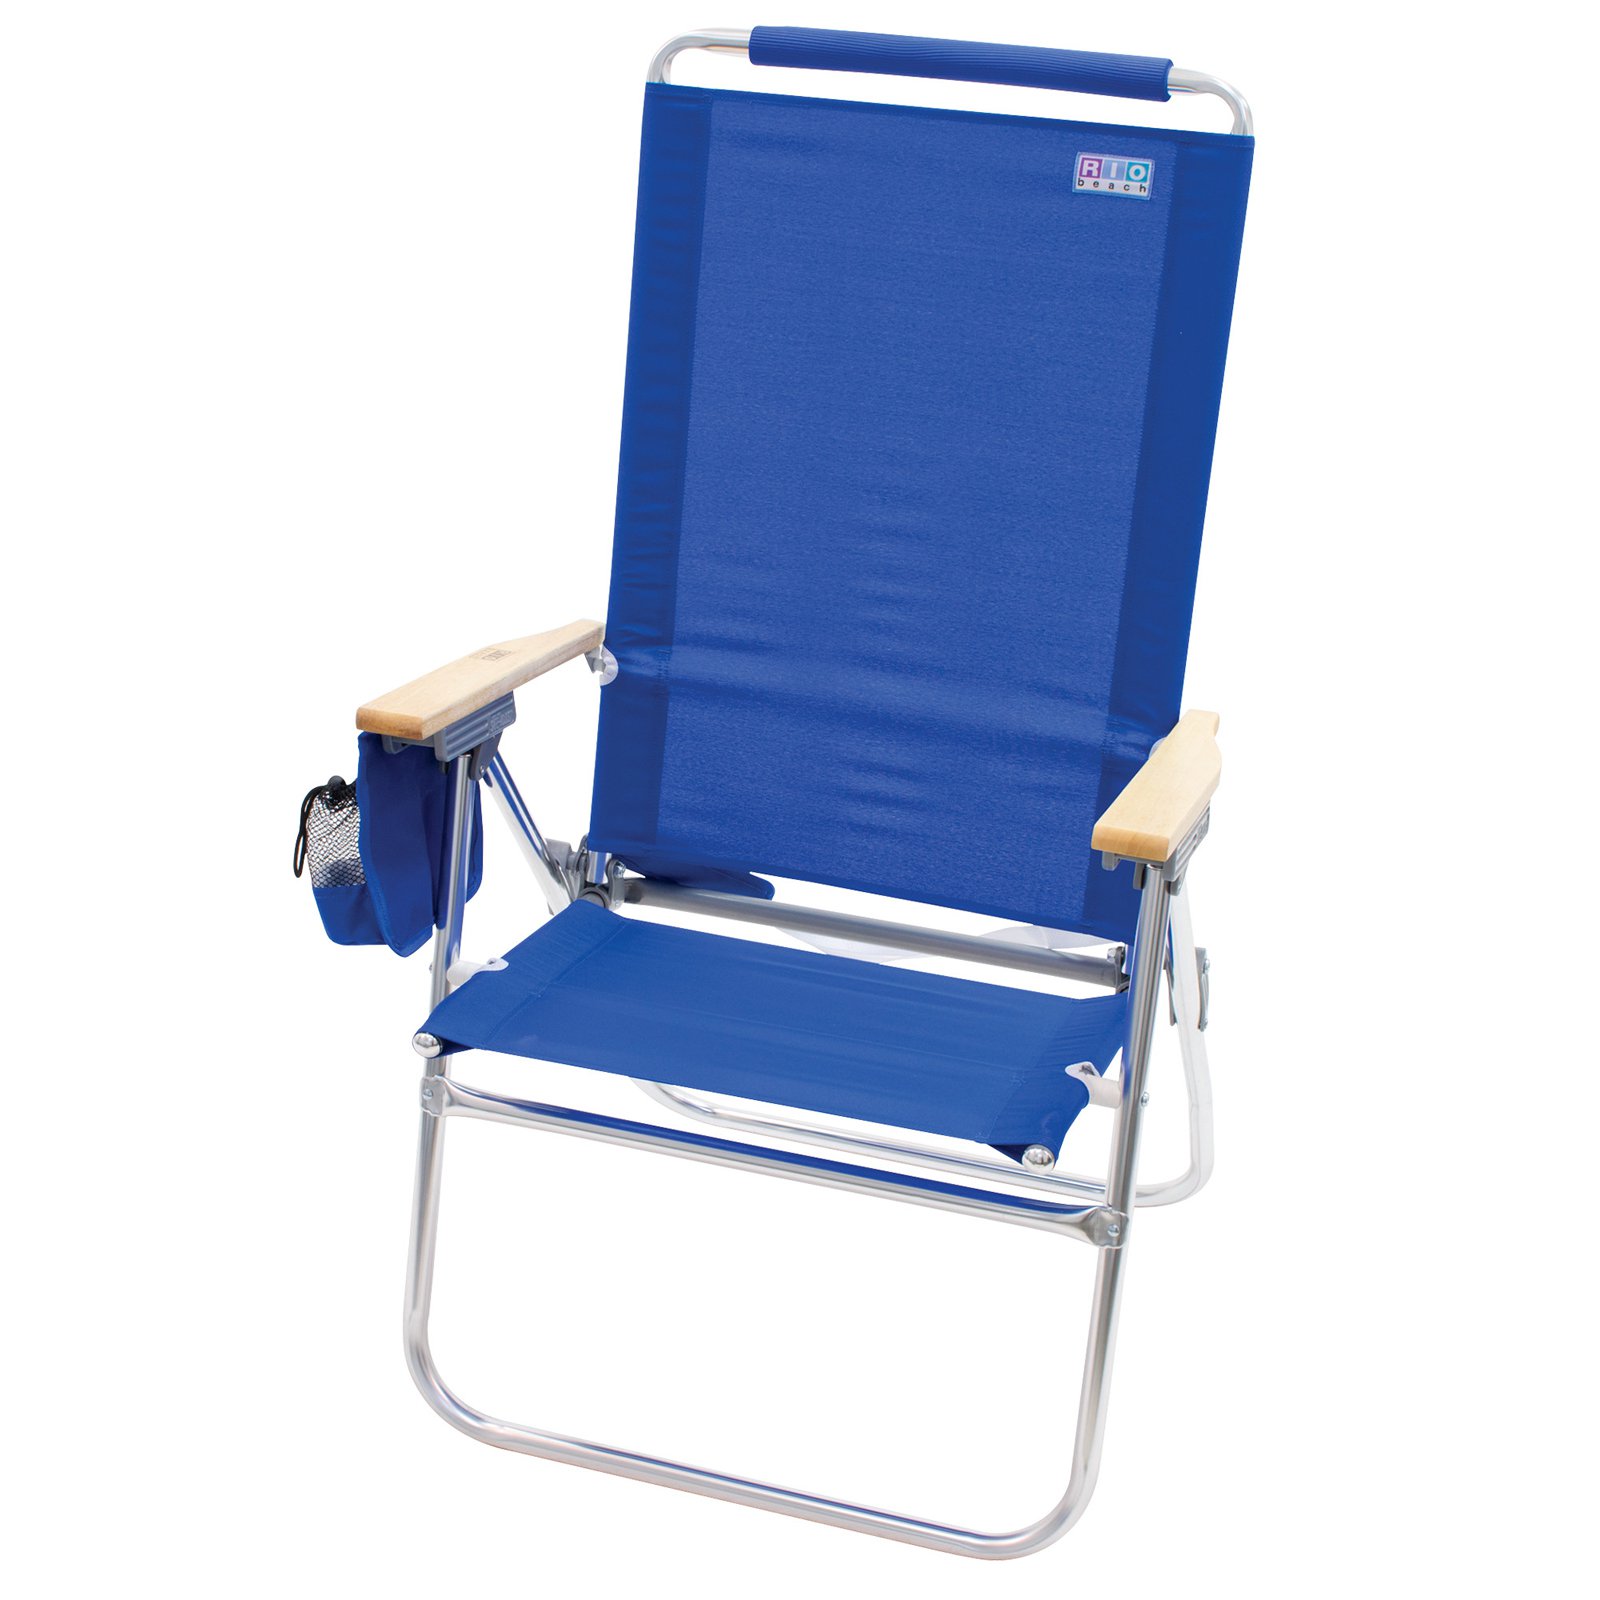 RIO Beach Hi-Boy Aluminum Beach Chair, Blue, Adjustable Lounge Chair - image 2 of 3